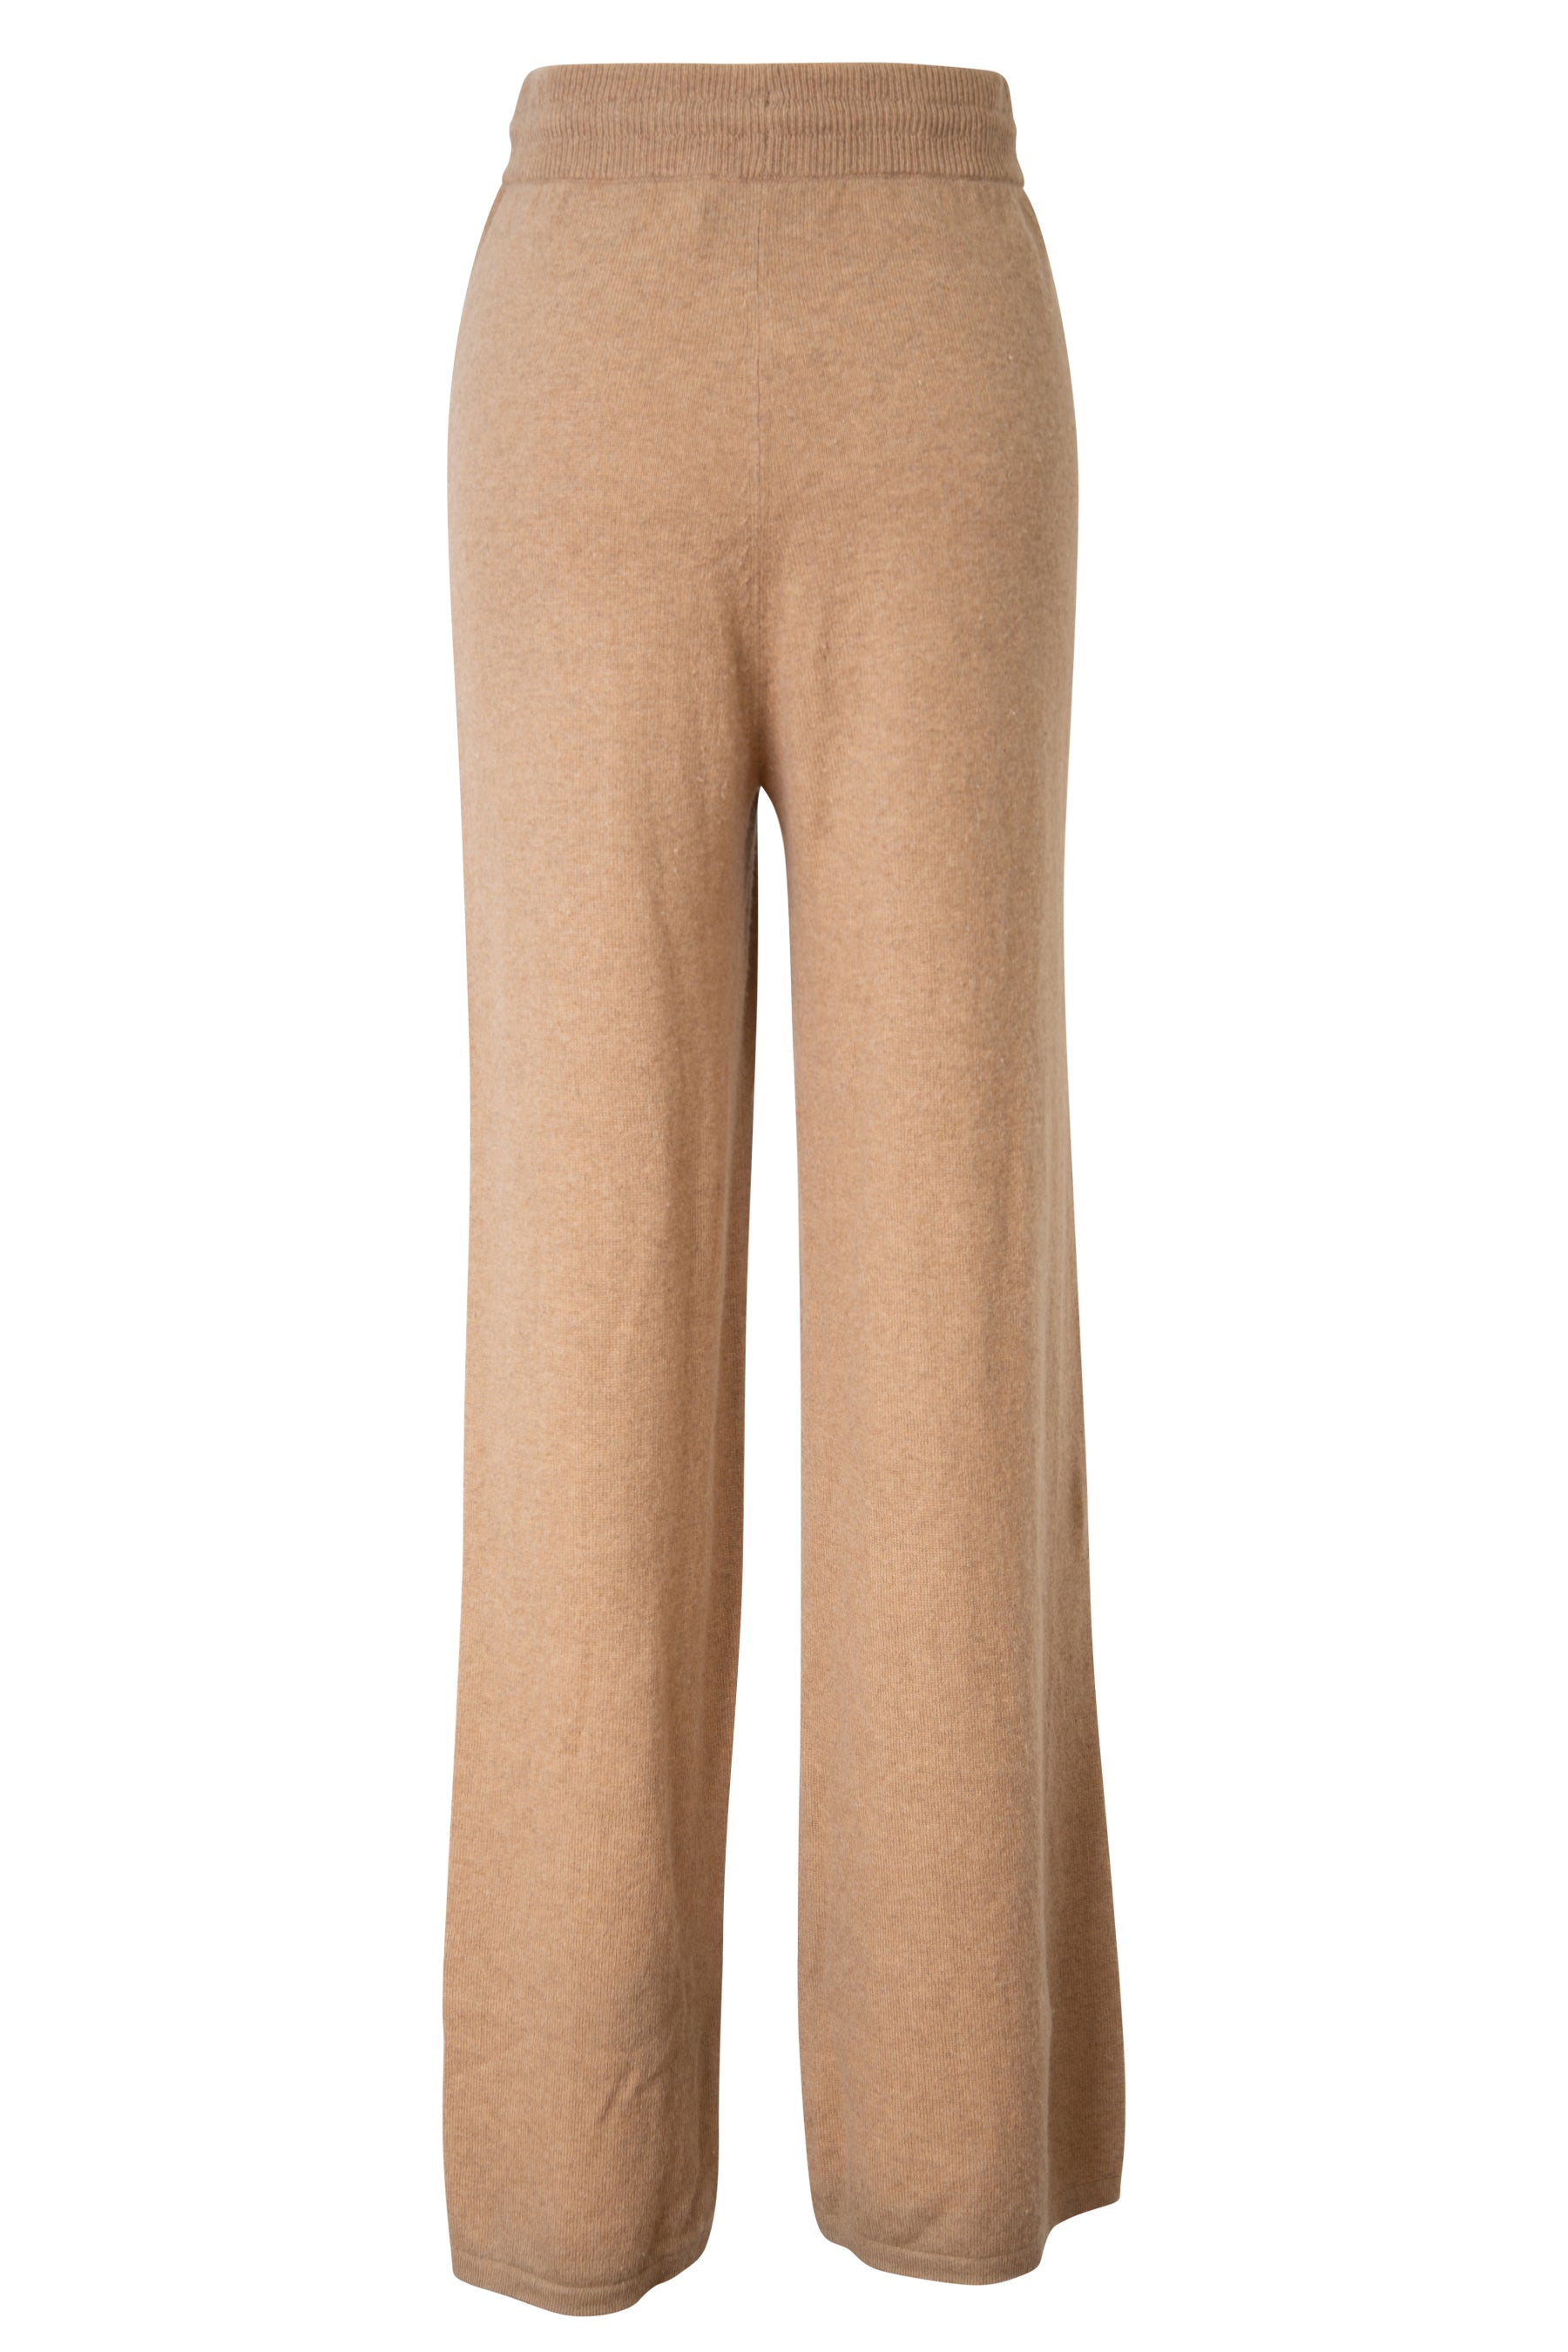 Totême Cashmere Cable Knit Lounge Pants - 835 Camel | Garmentory